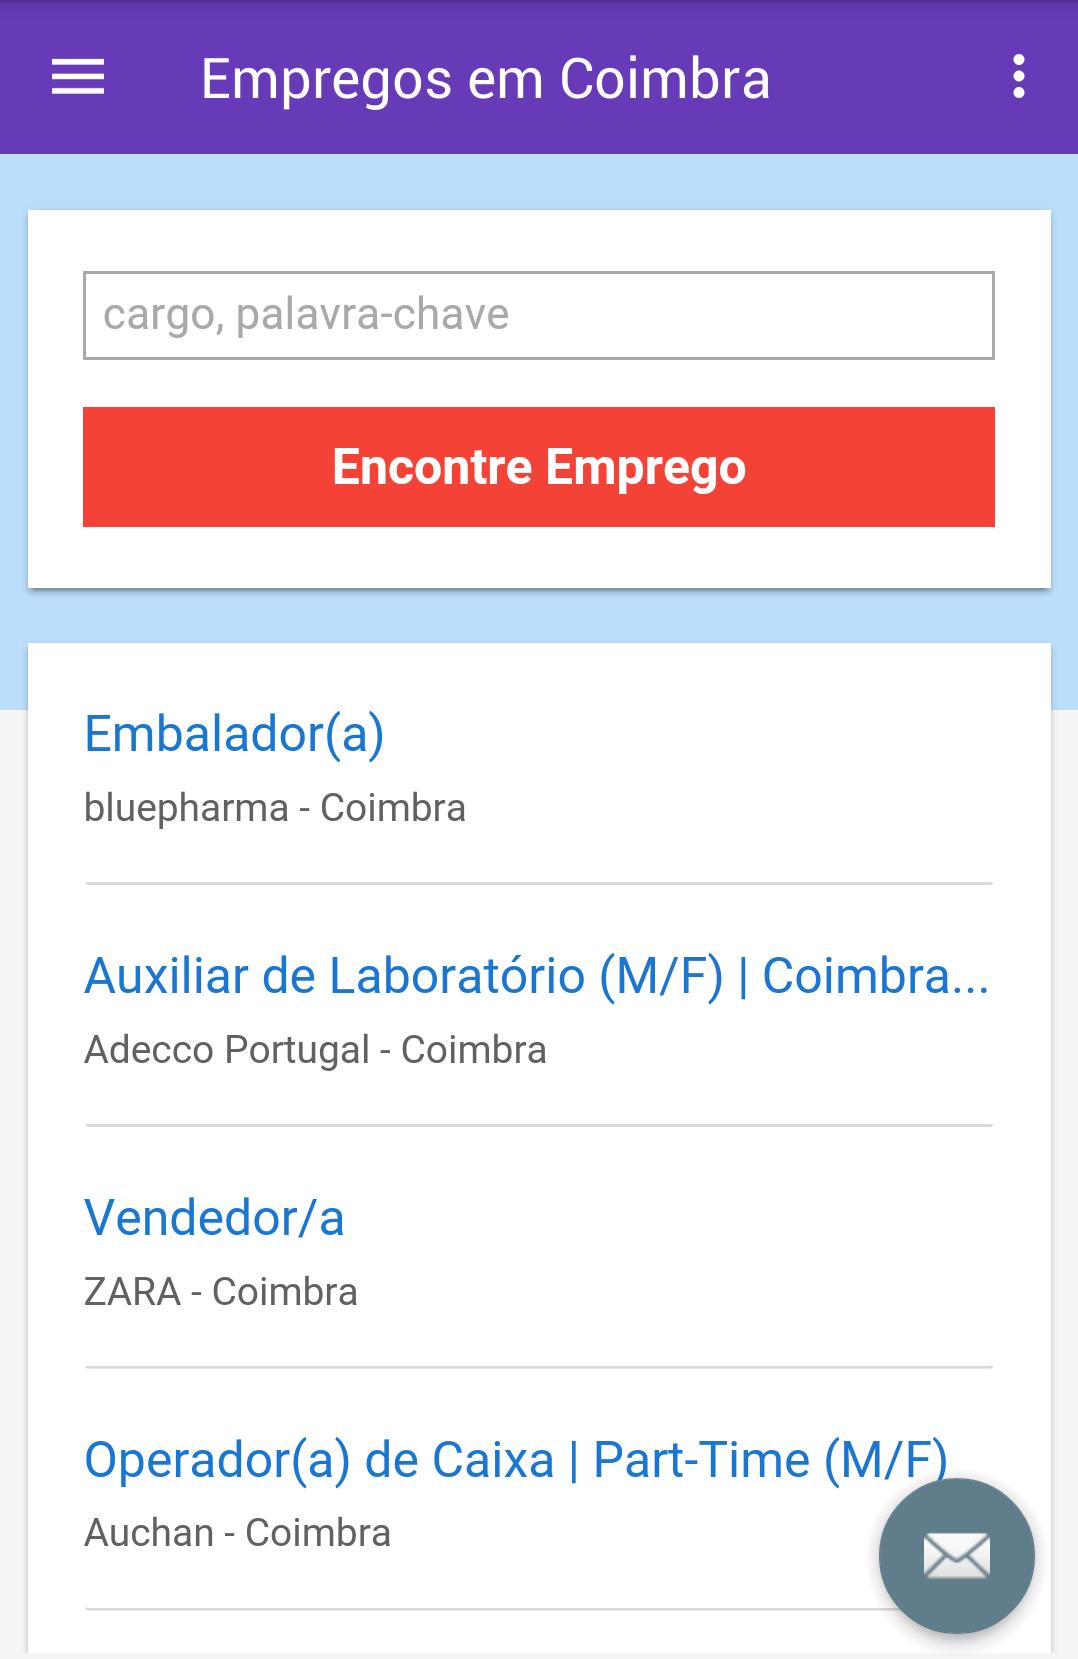 Empregos em Coimbra for Android - APK Download